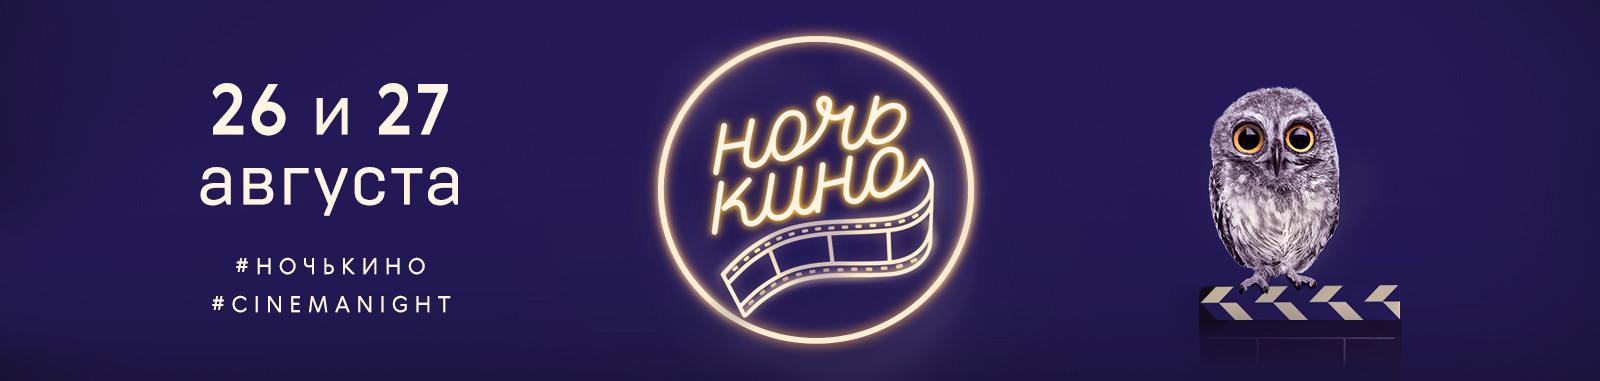 «Город на реке Тушино 2018» стал Официальным партнером акции «Ночь кино».